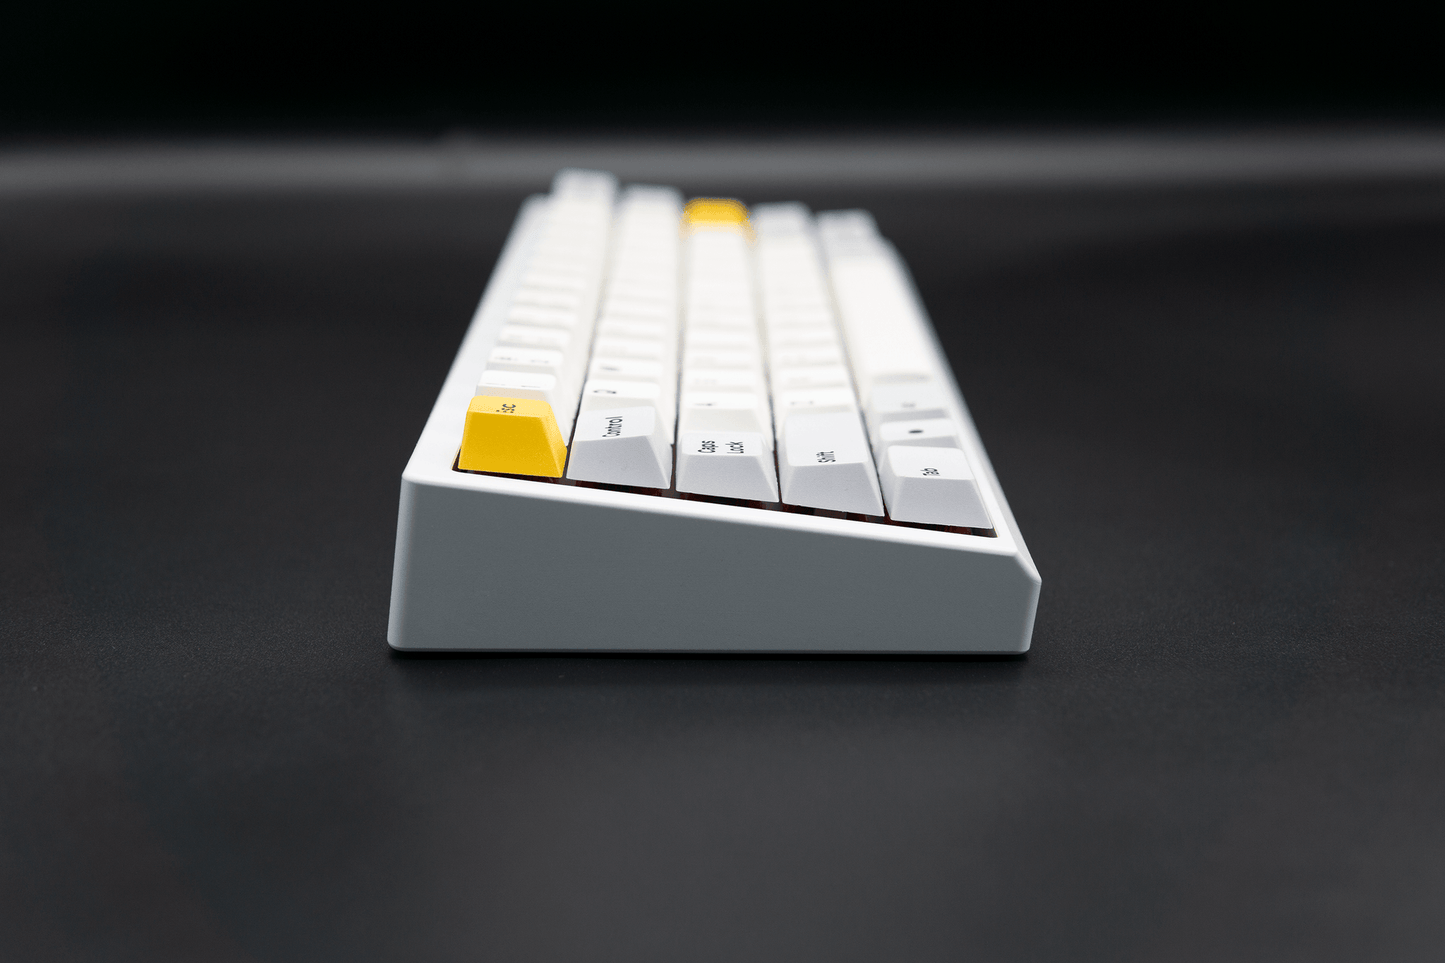 
                  
                    (In Stock) Simpler60 Keyboard Kit
                  
                